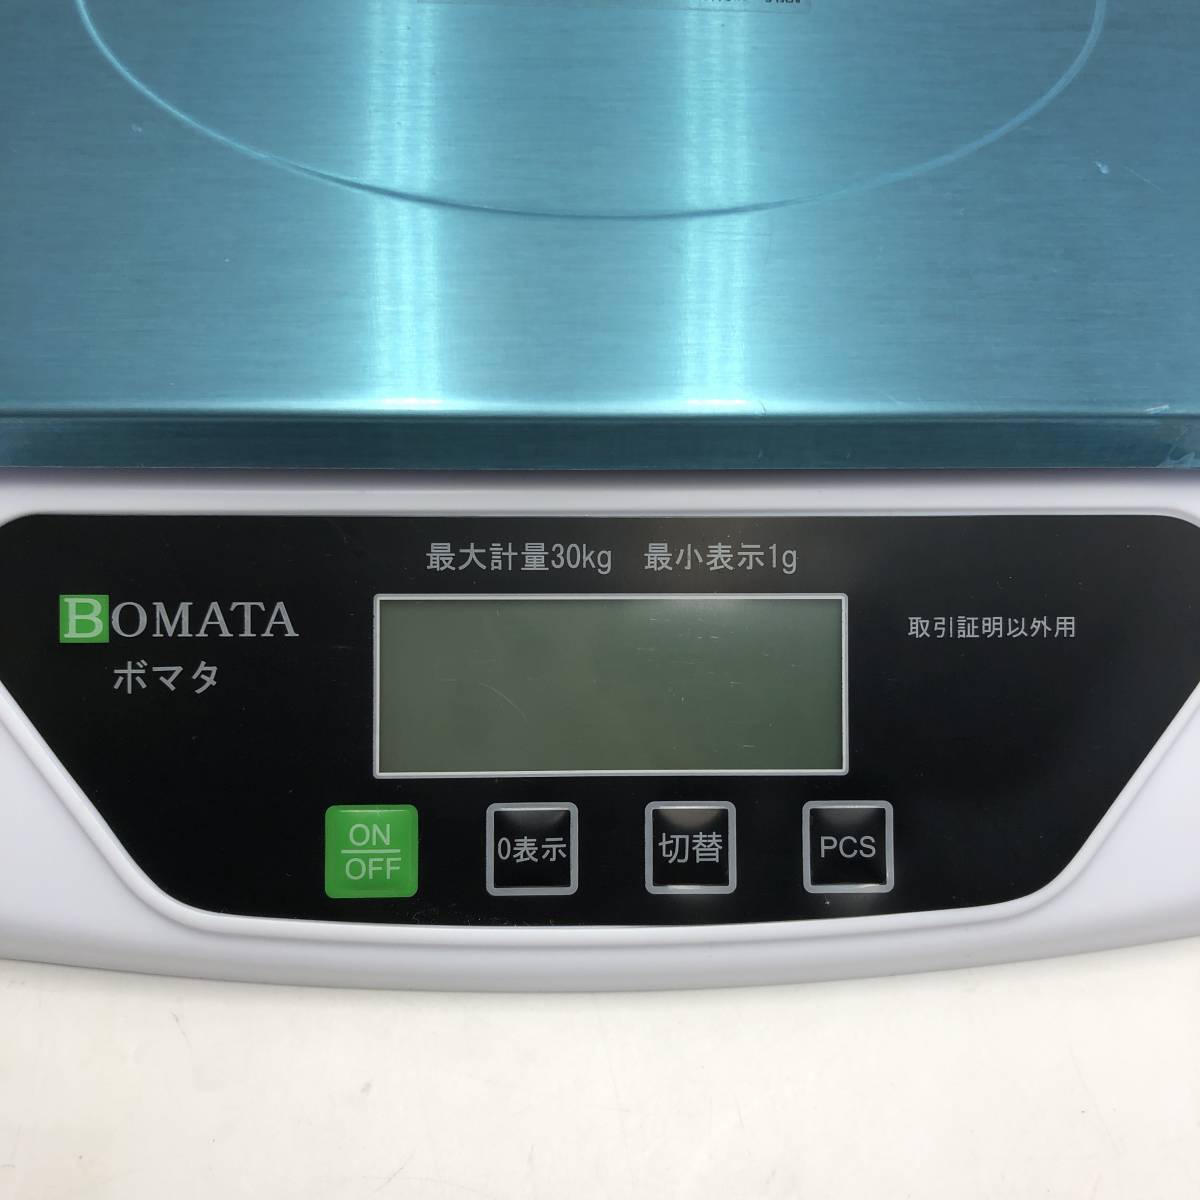  【通電確認済み】BOMATA(ボマタ) 台はかり 1g単位 30kg USB給電&乾電池 デジタルスケール B612C/Y14559-X3_画像3